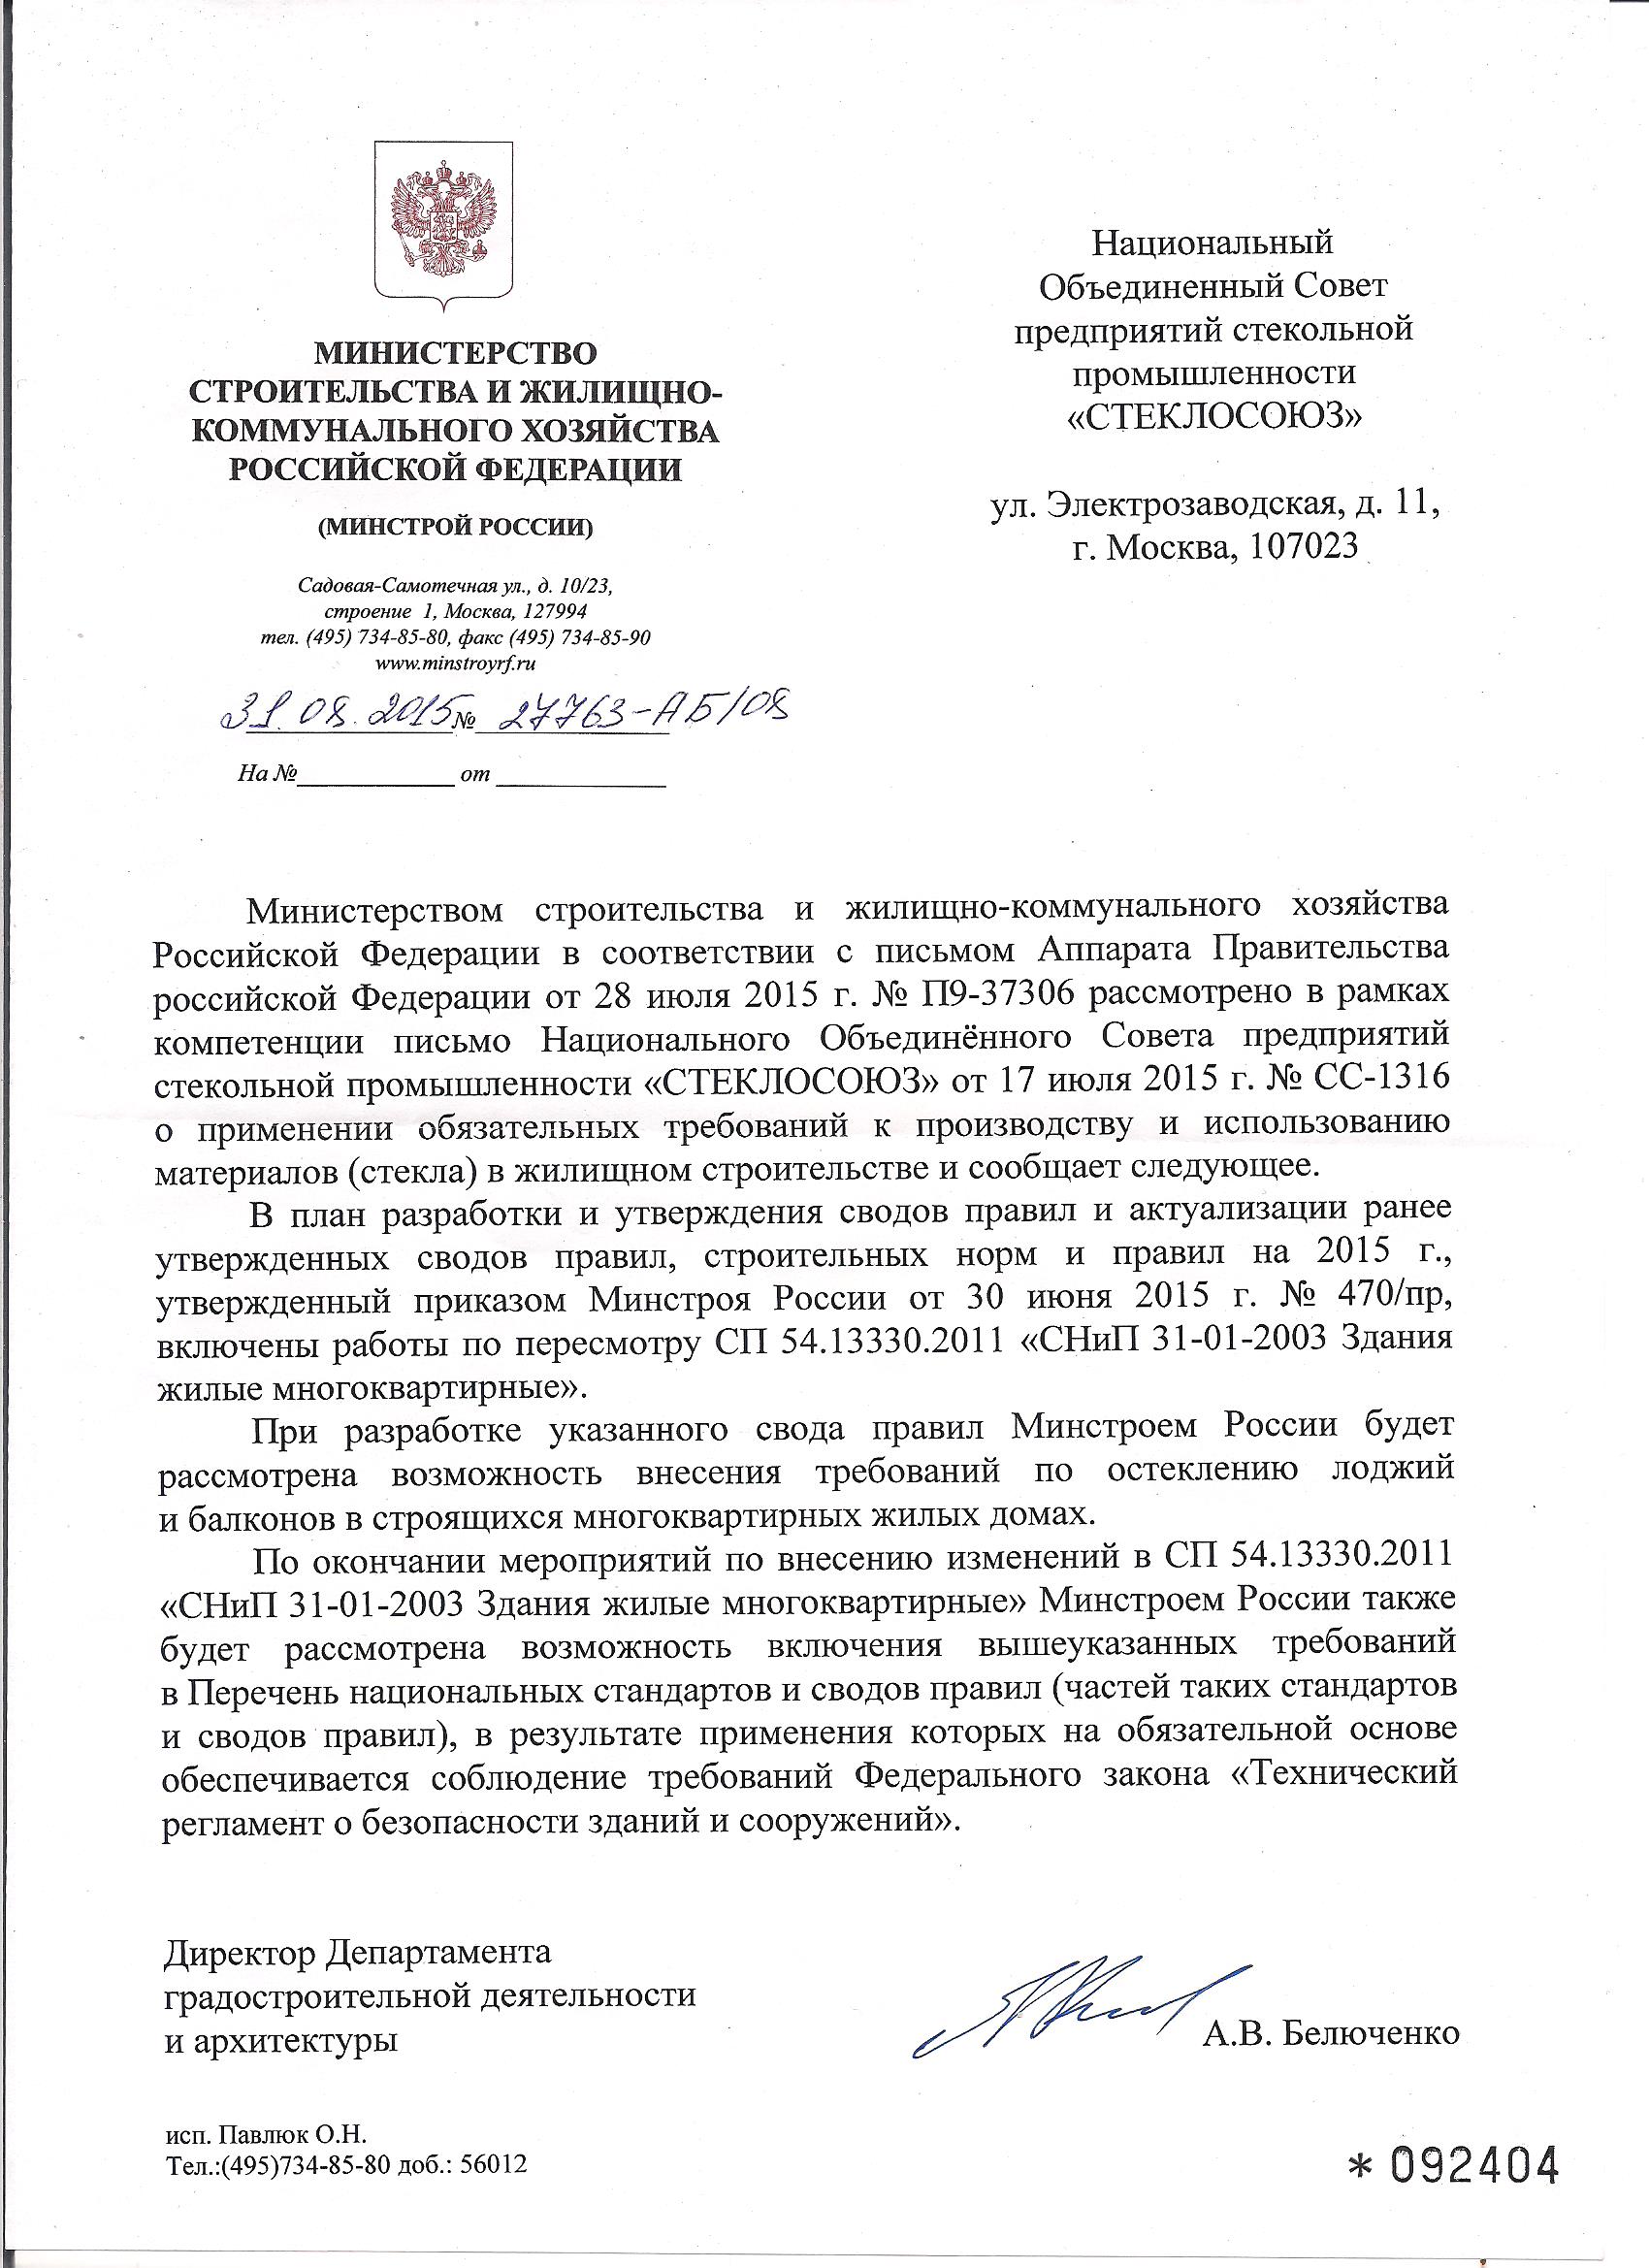 Письмо от Министерства строительства и жилищно-коммунального хозяйства РФ